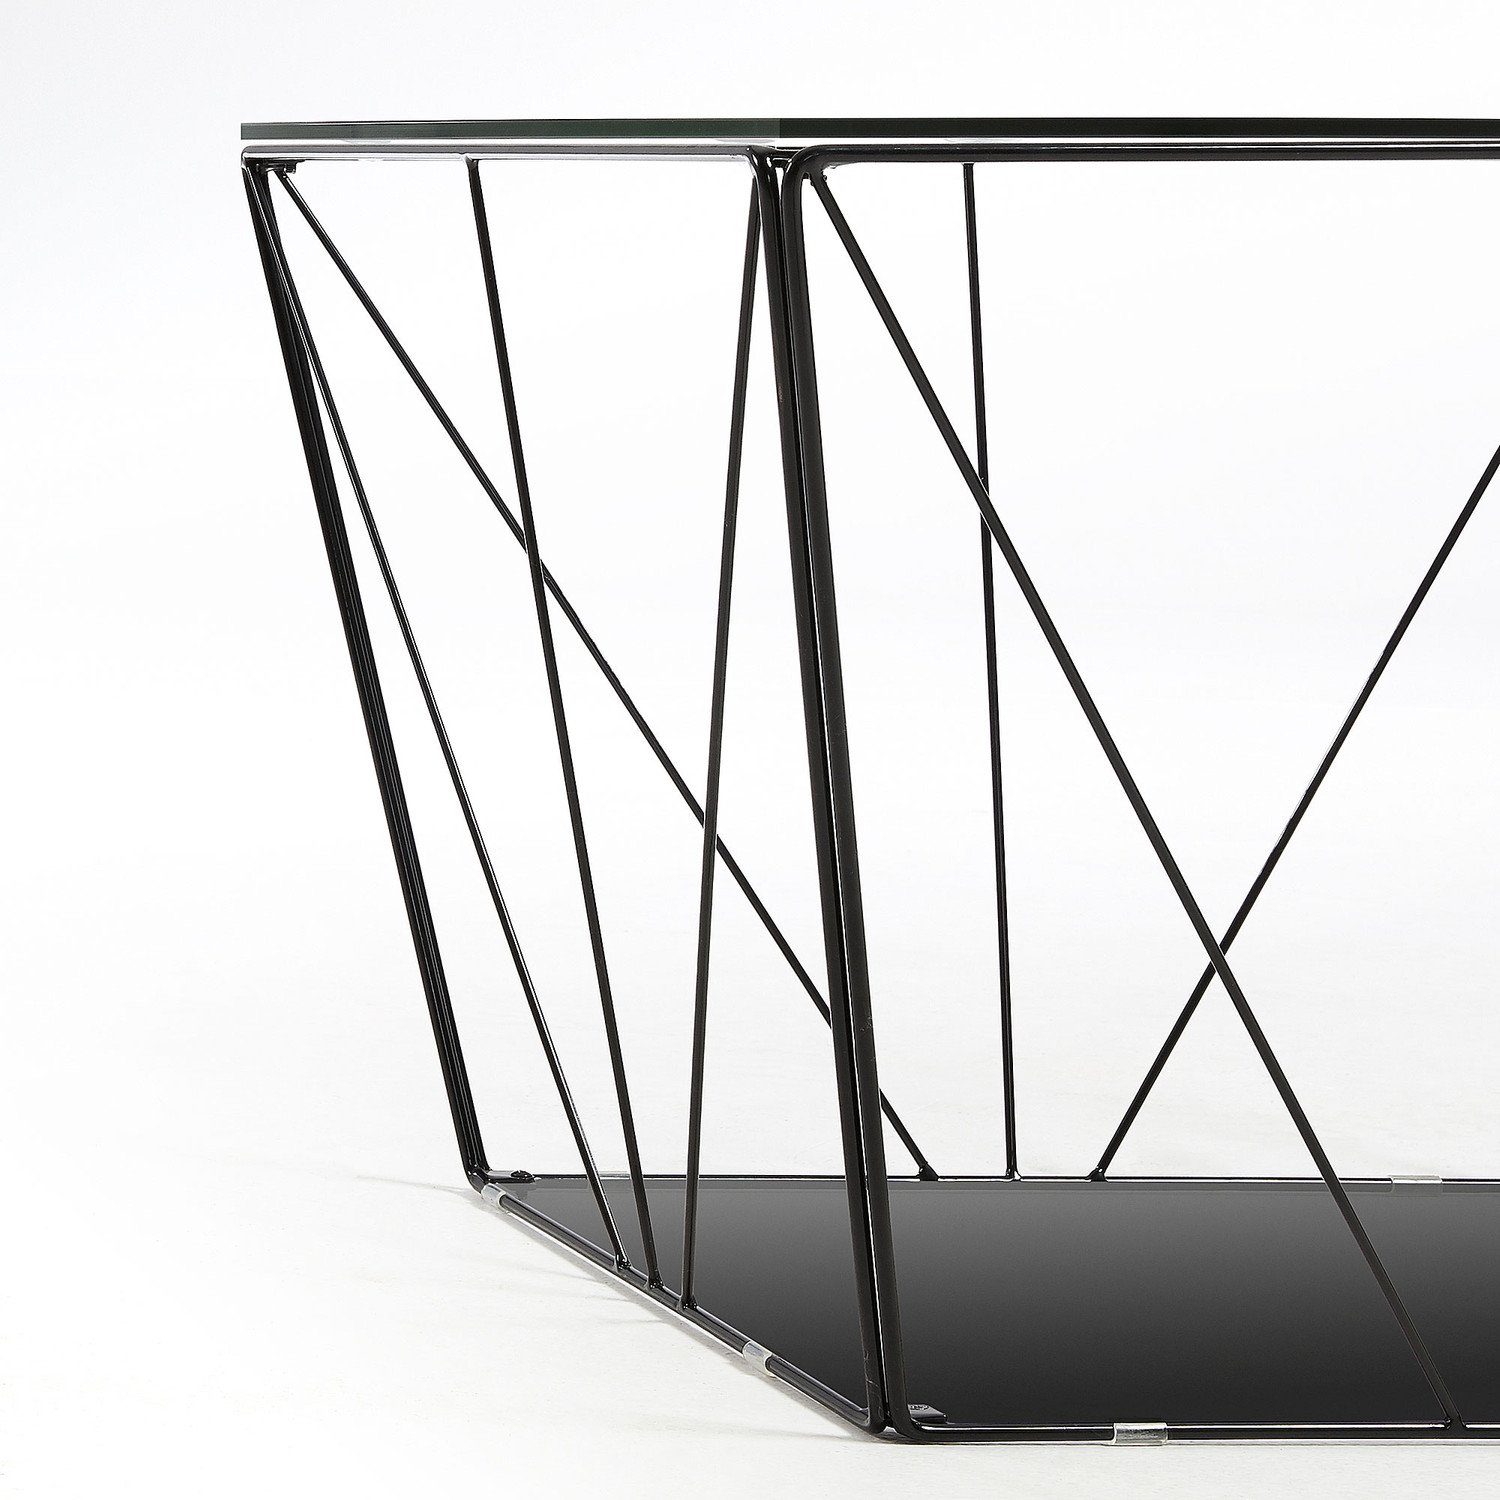 Beistelltisch Tilo und 60x60cm Natur24 Beistelltisch Stahl Glas Couchtisch